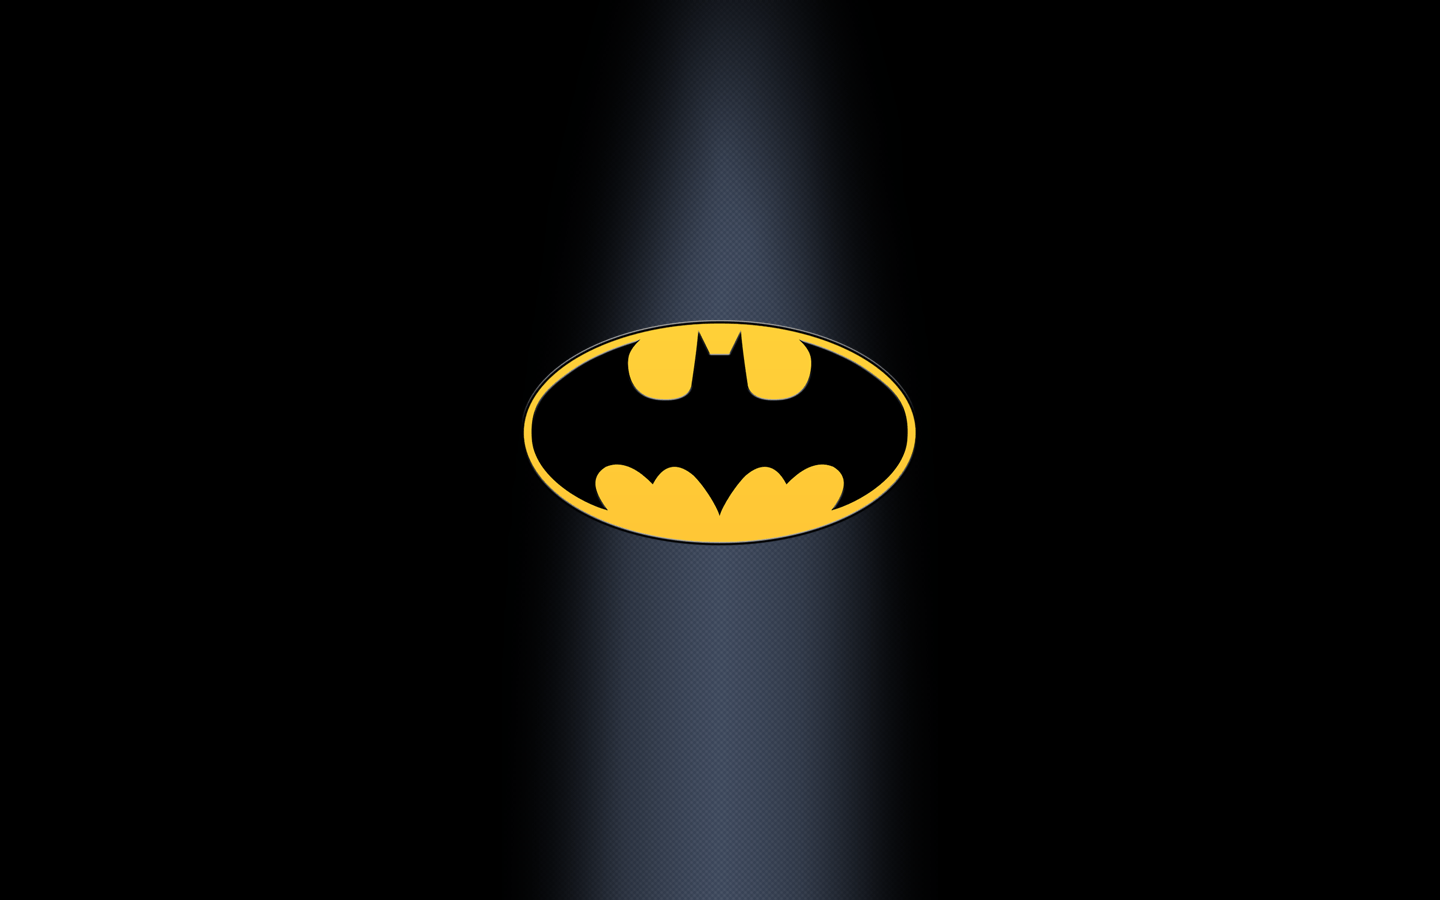 Lambang Batman Terbaru